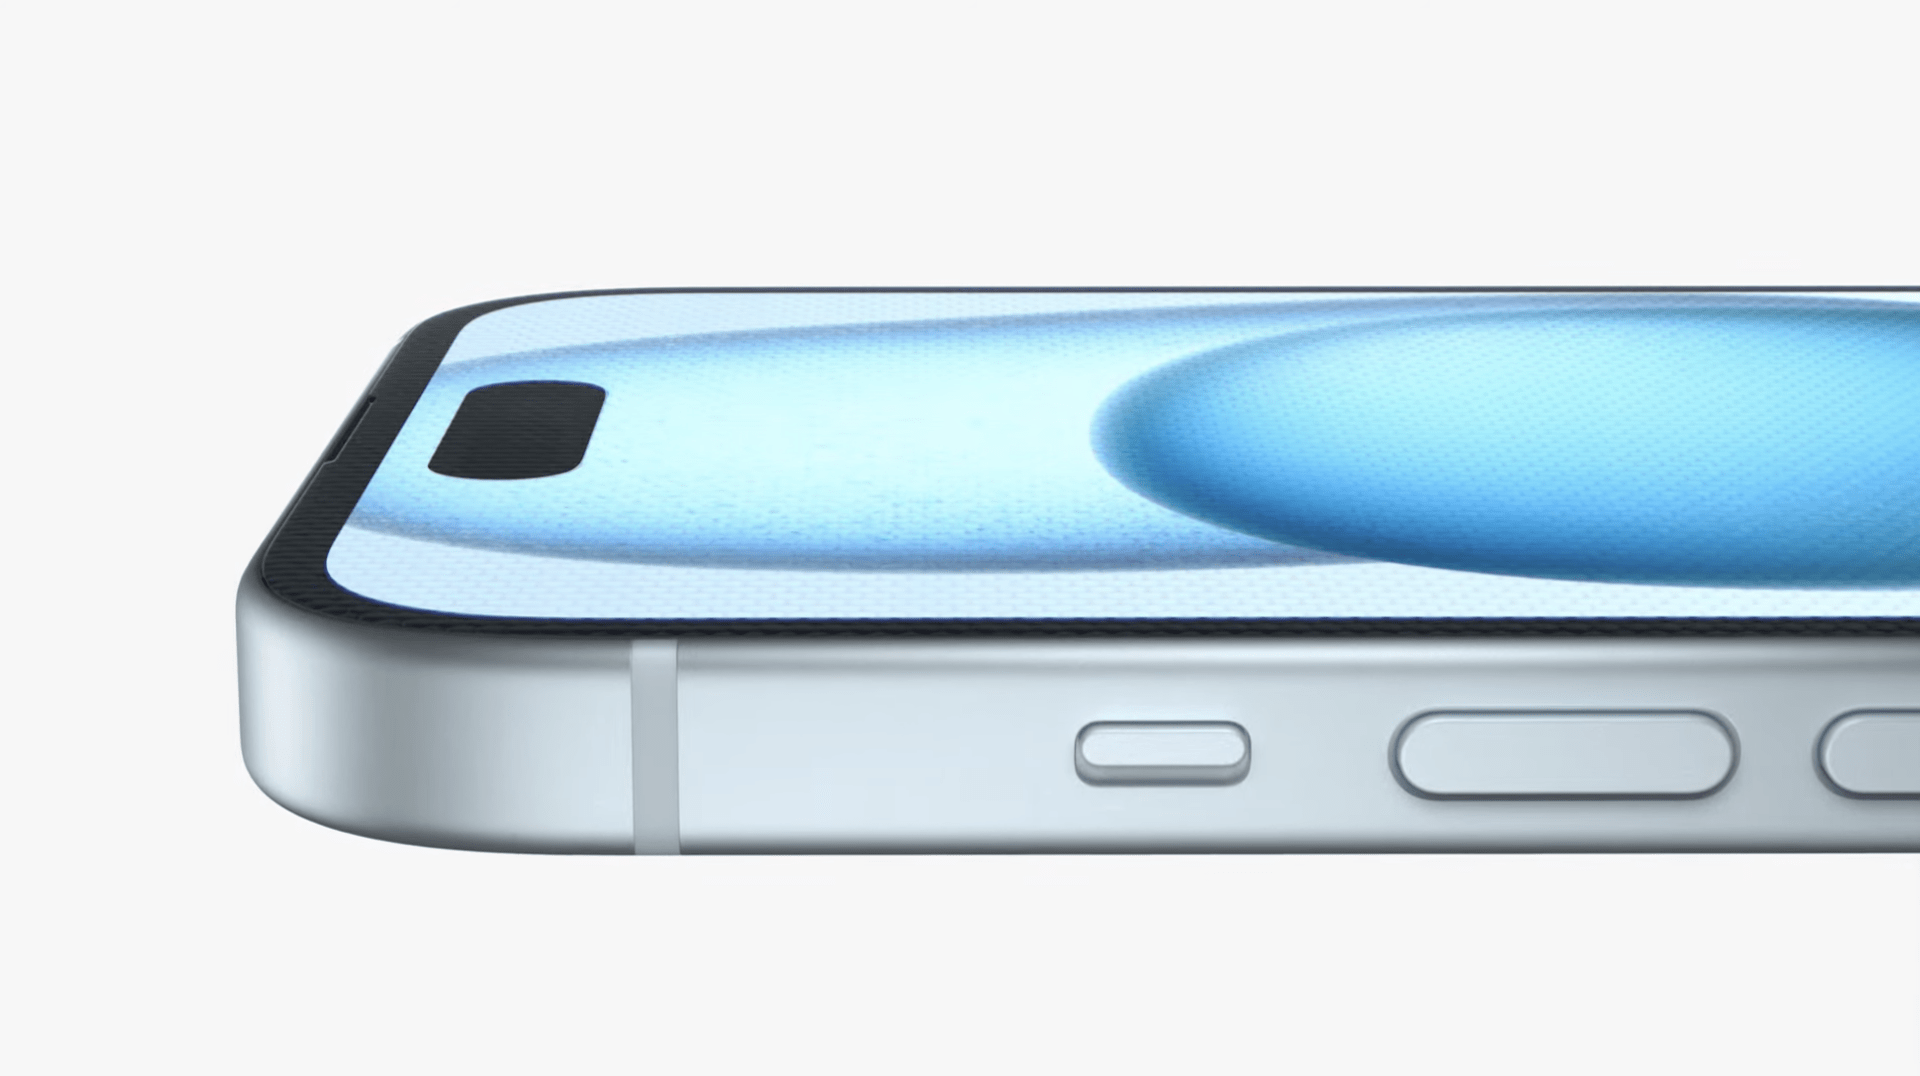 Nová řada chytrých telefonů iPhone představena. Budou nakonec mít USB-C konektor.